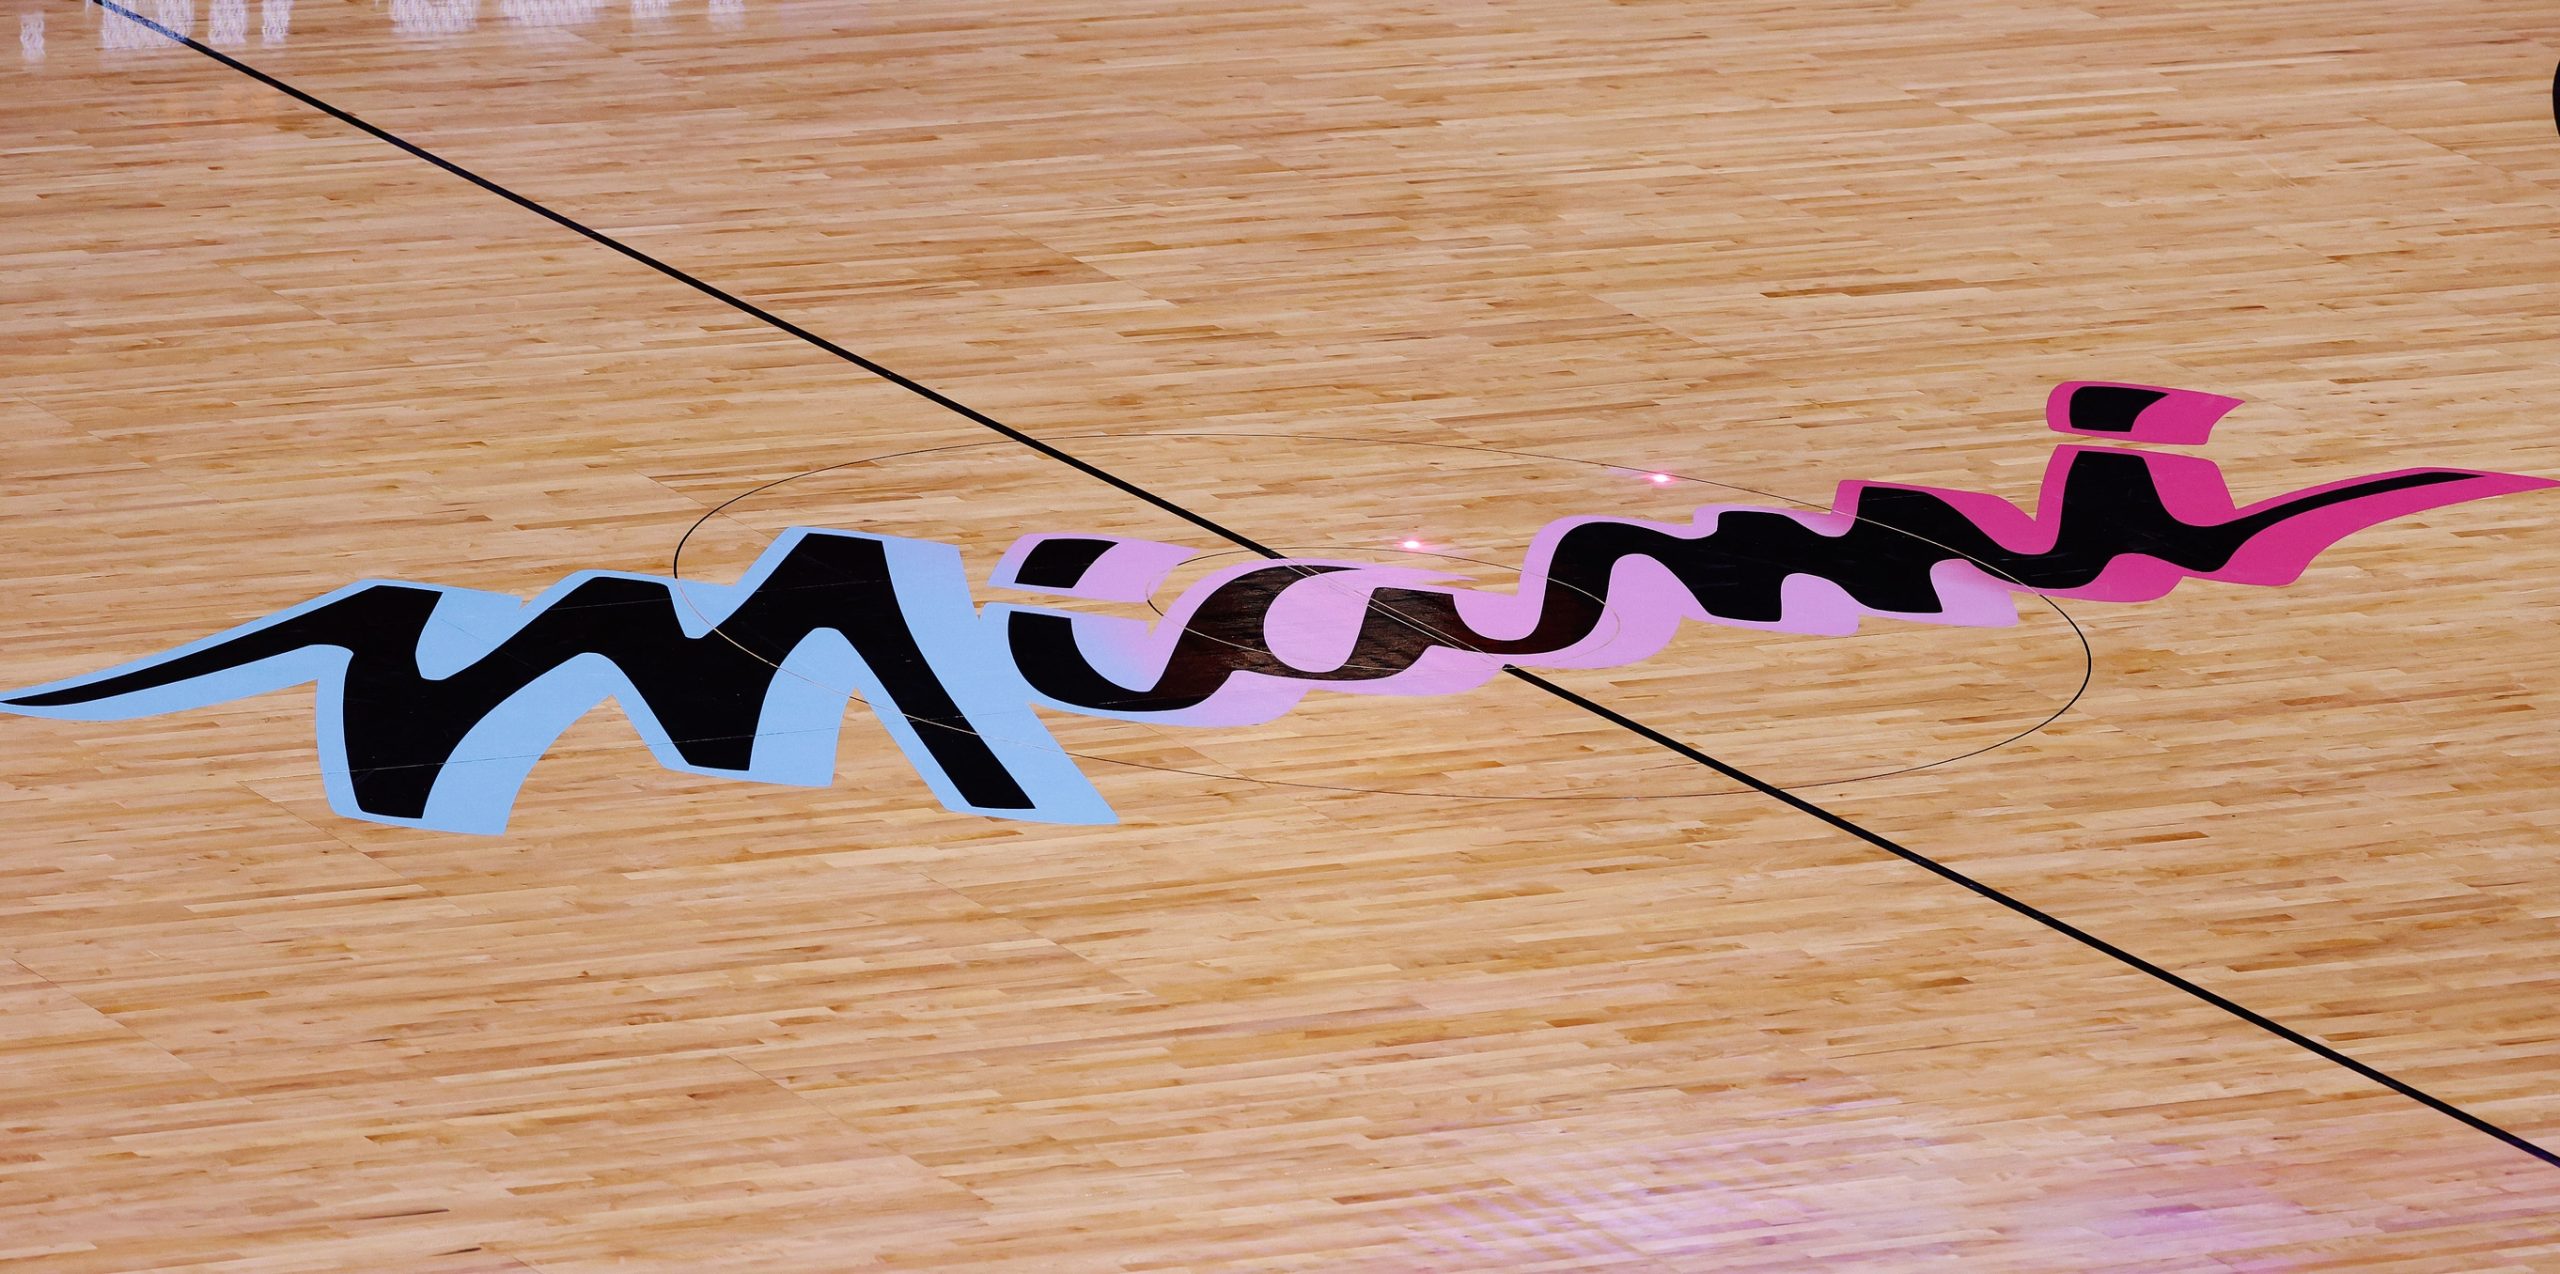 Miami Heat center court